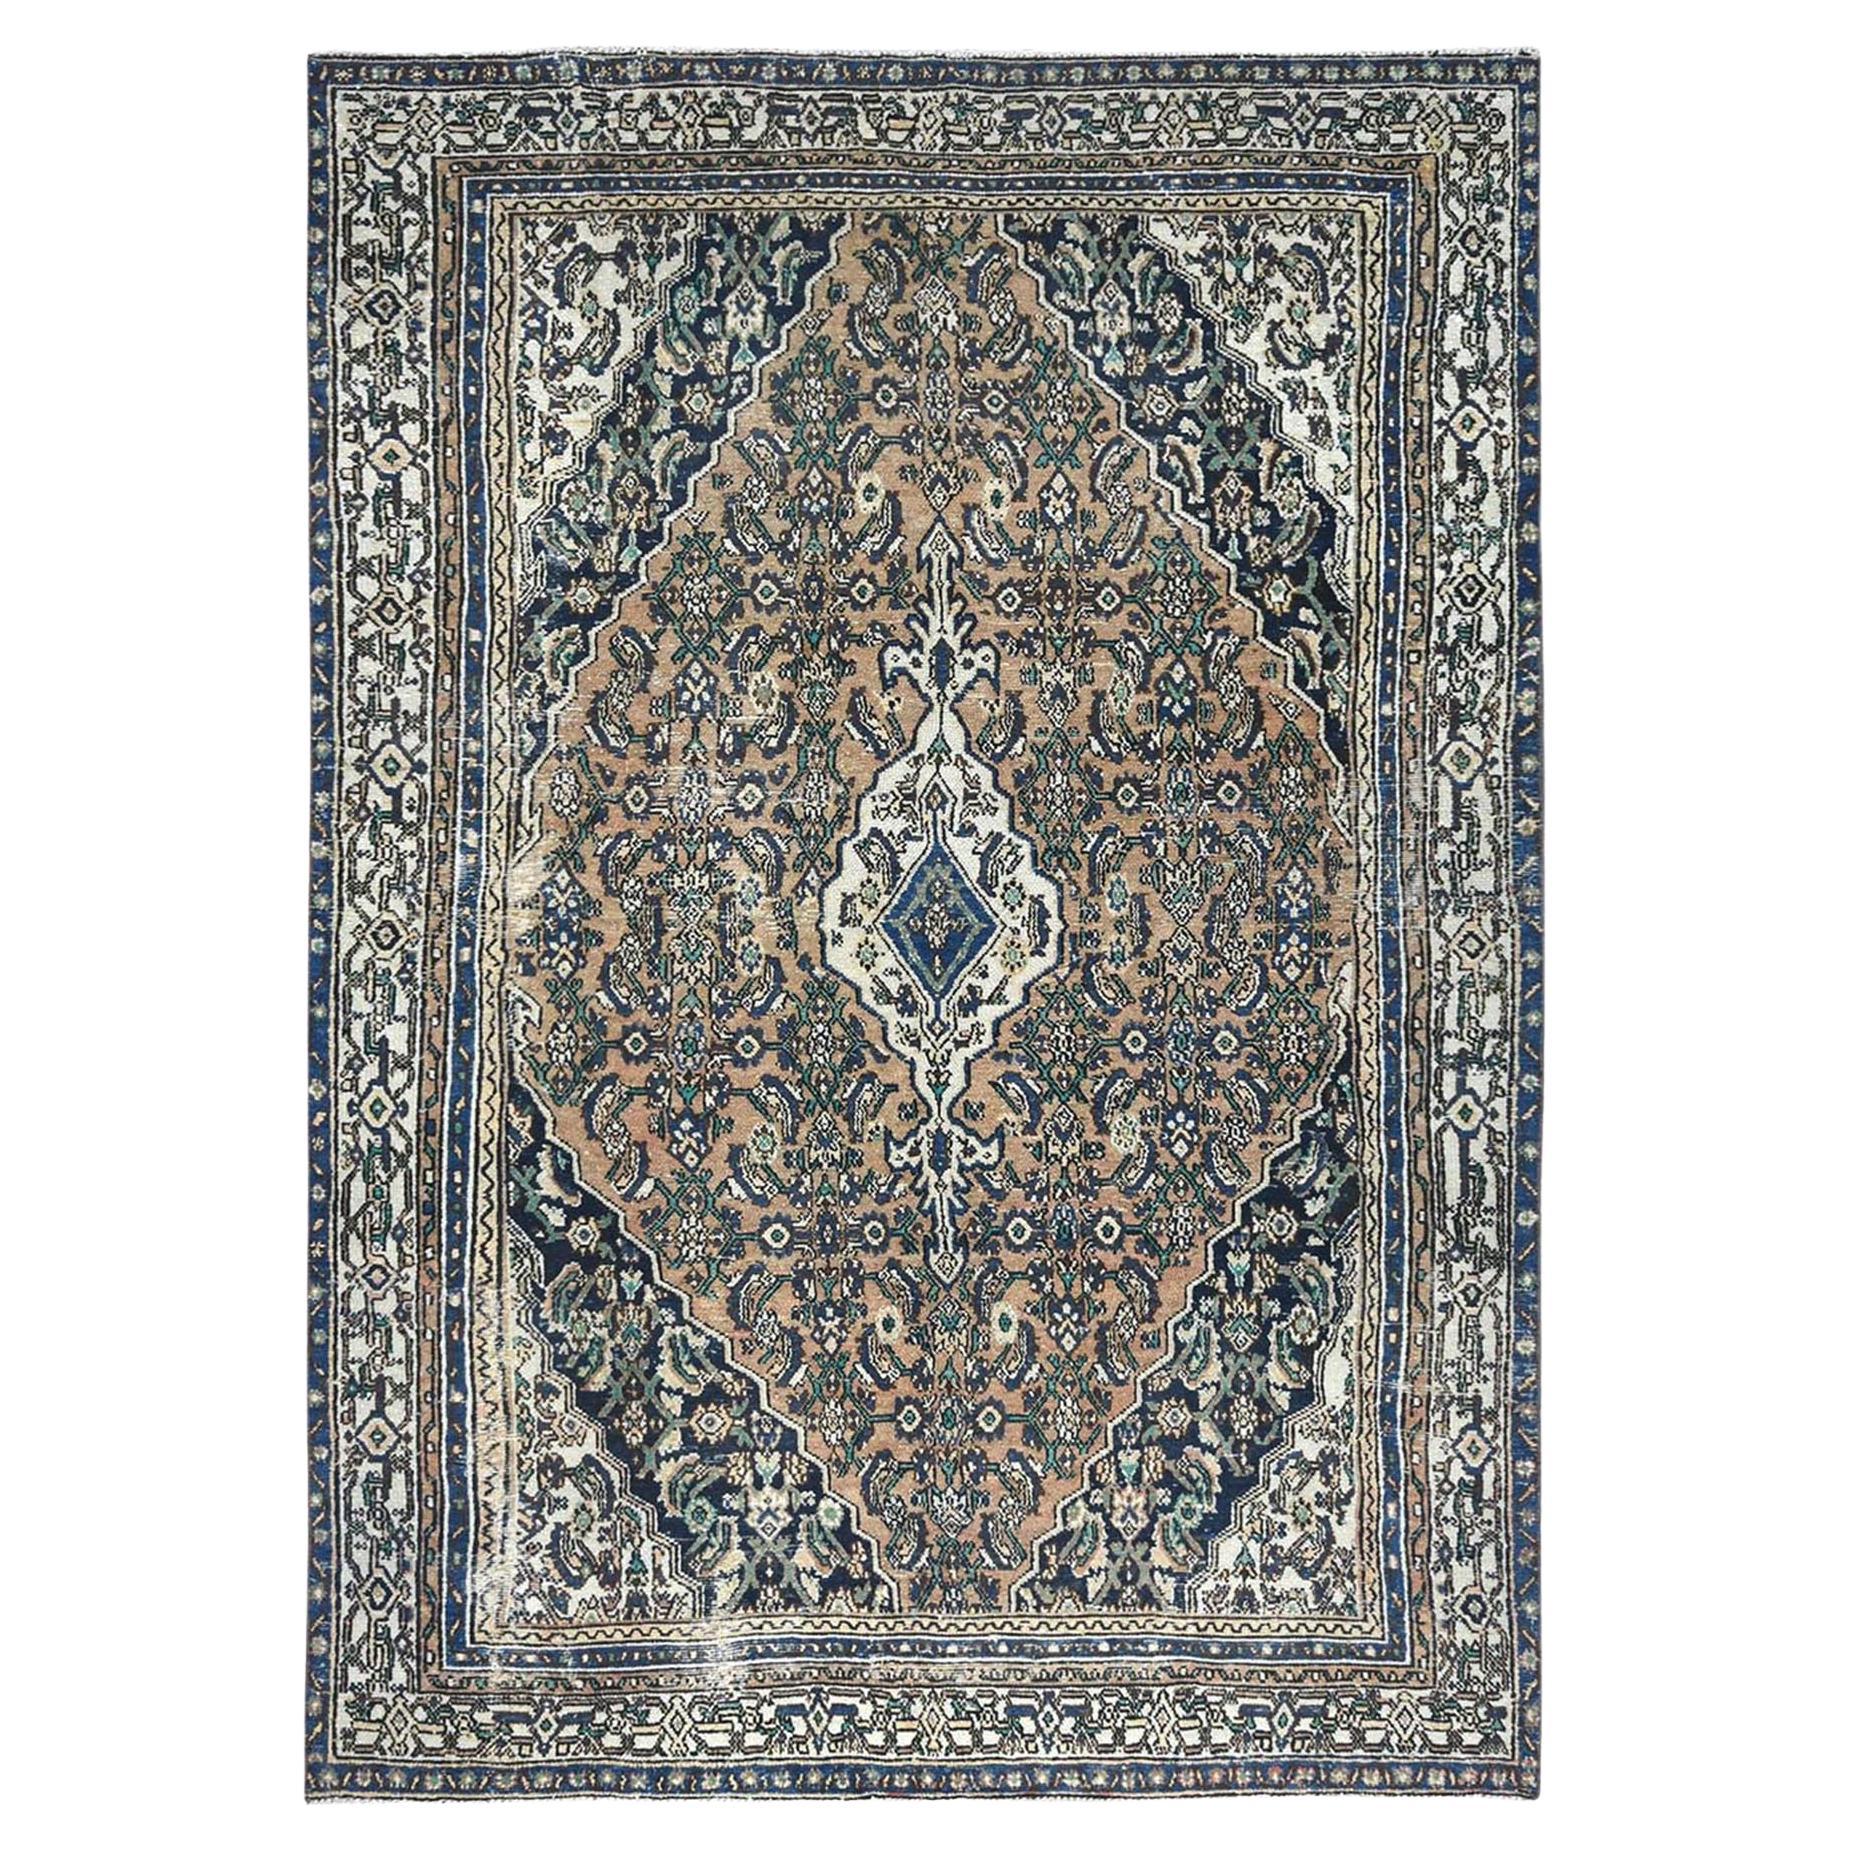 Brauner, handgeknüpfter persischer Hamadan-Teppich aus Wolle im Vintage-Stil, im Used-Look